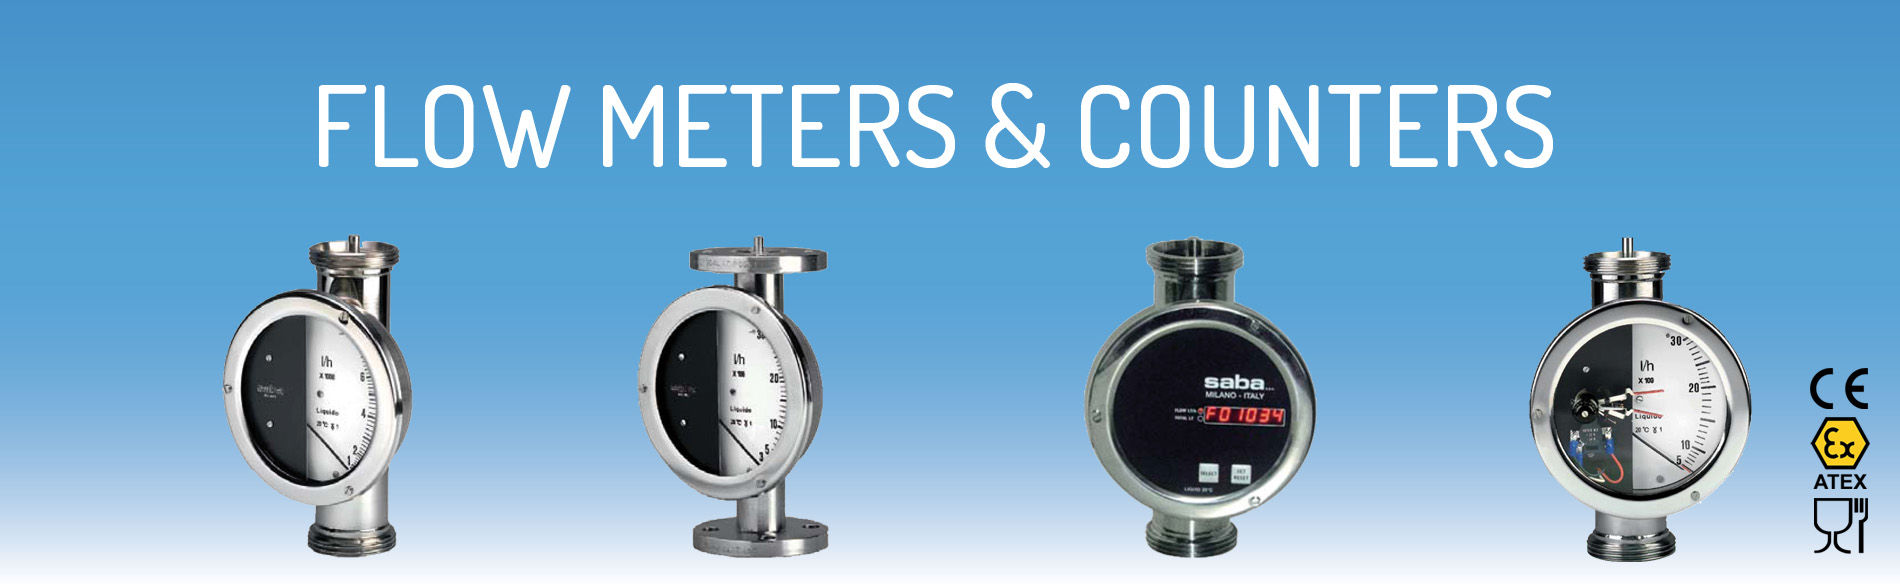 Flow meters & counters